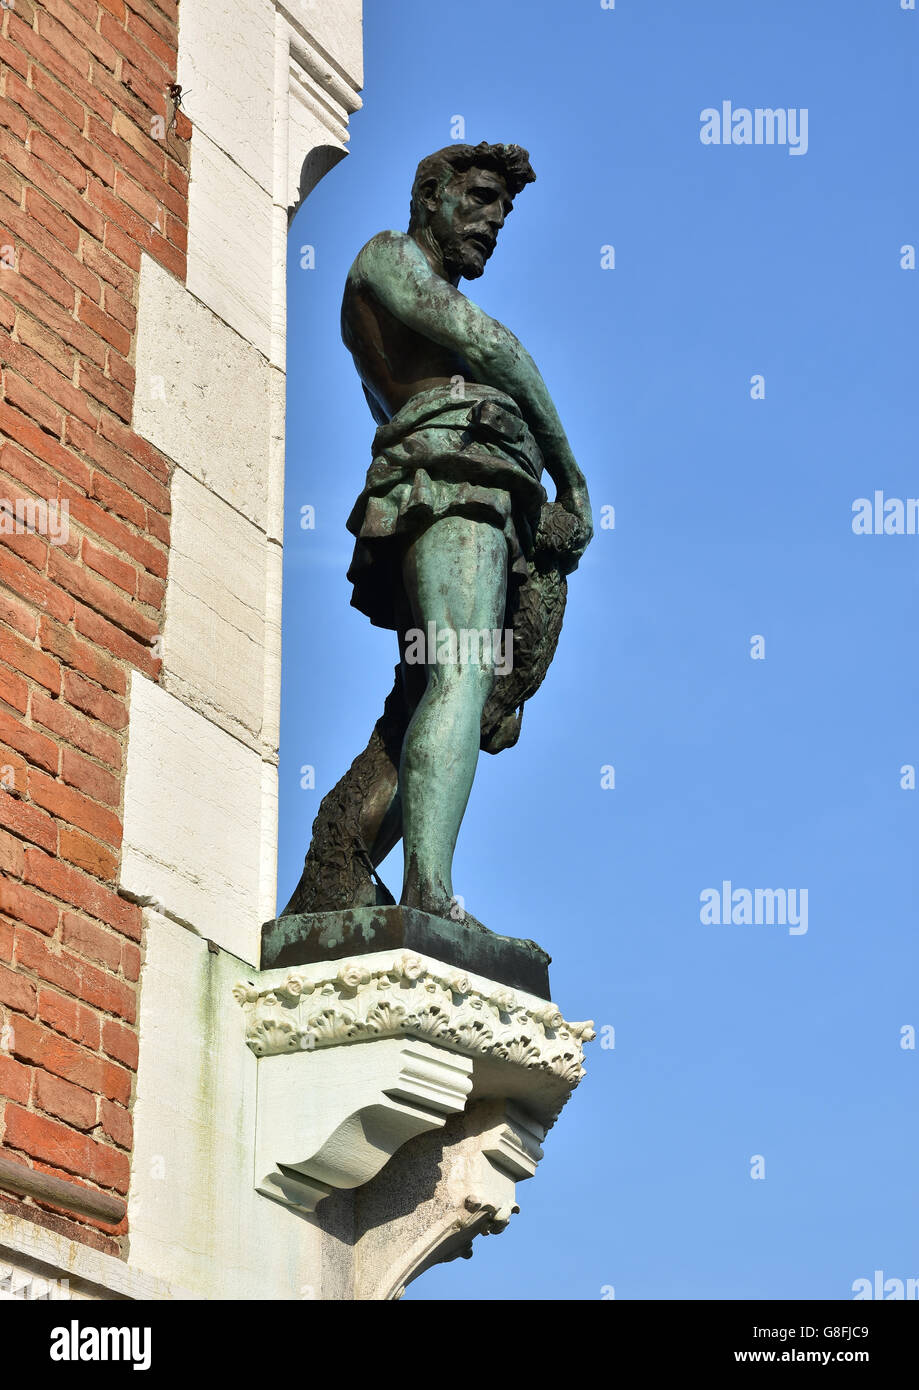 Statue en bronze de Sain Pierre en tant que pêcheur, à l'angle de l'édifice néogothique du marché de poissons du Rialto à Venise, faite par l'artiste Laure Banque D'Images